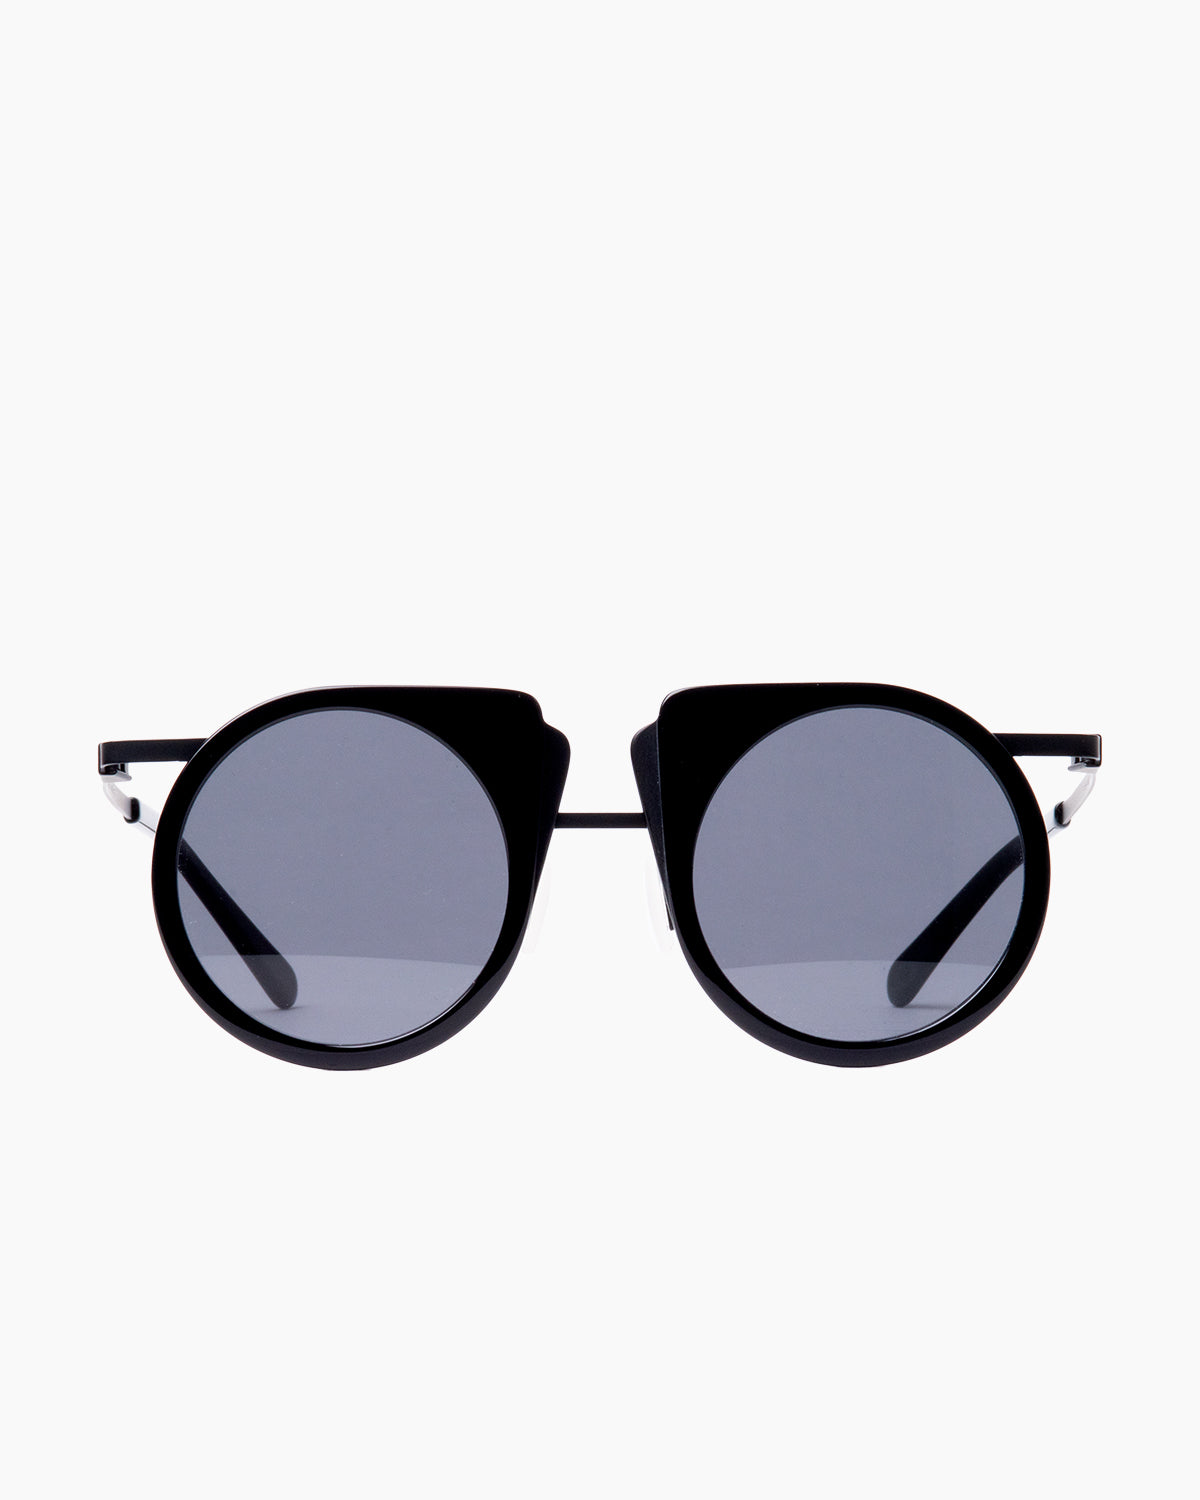 Gamine - FlipS - Black/Black | Bar à lunettes:  Marie-Sophie Dion